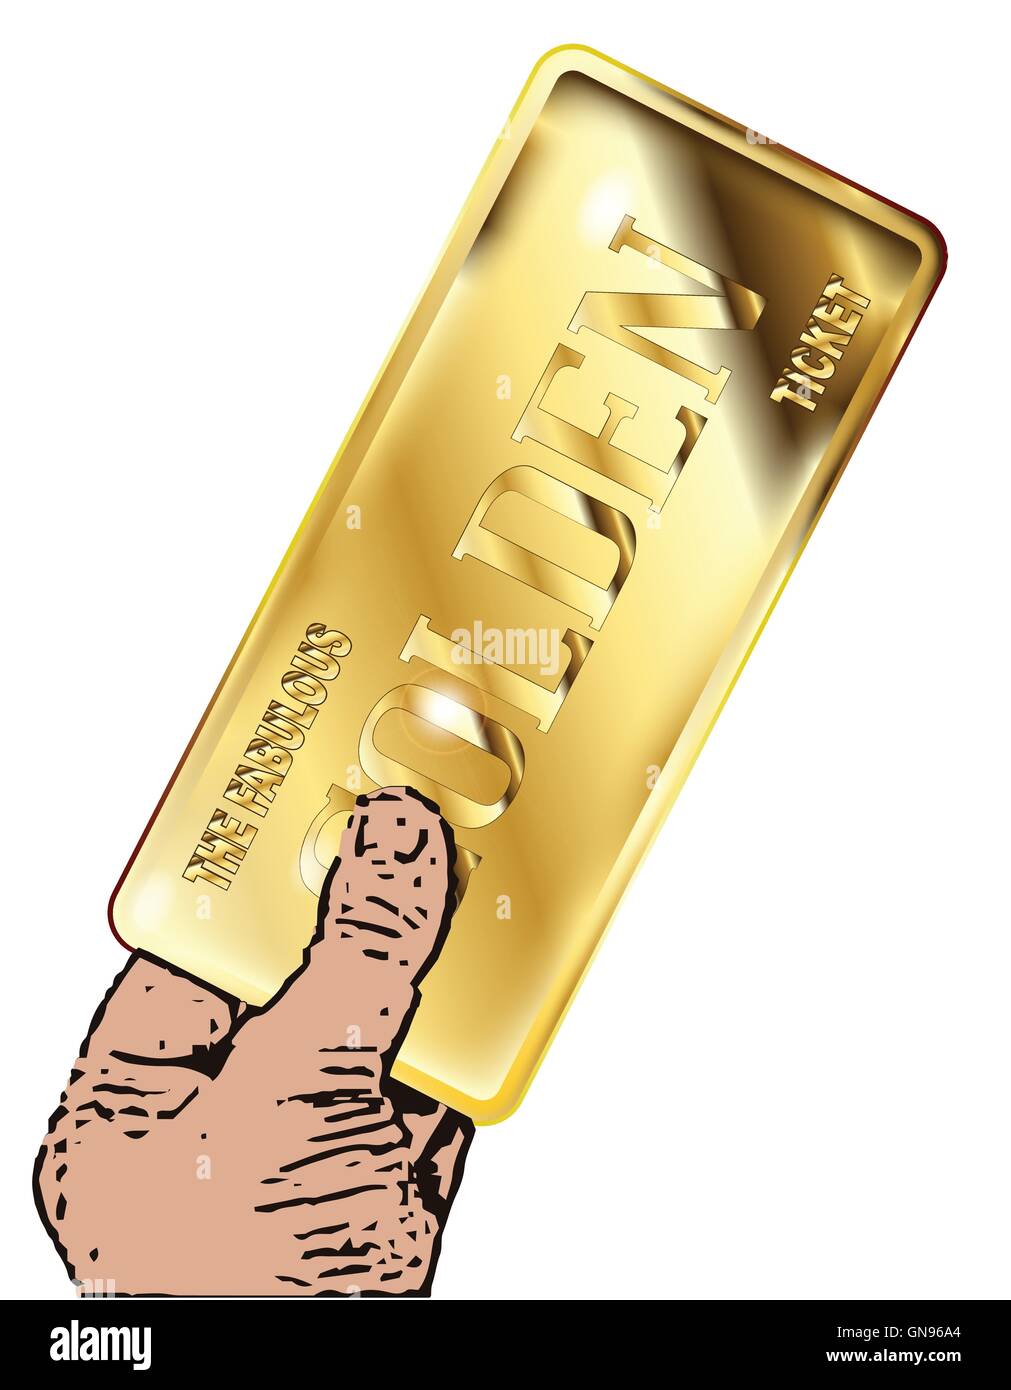 Un ticket gagnant d'or sur un fond blanc Photo Stock - Alamy